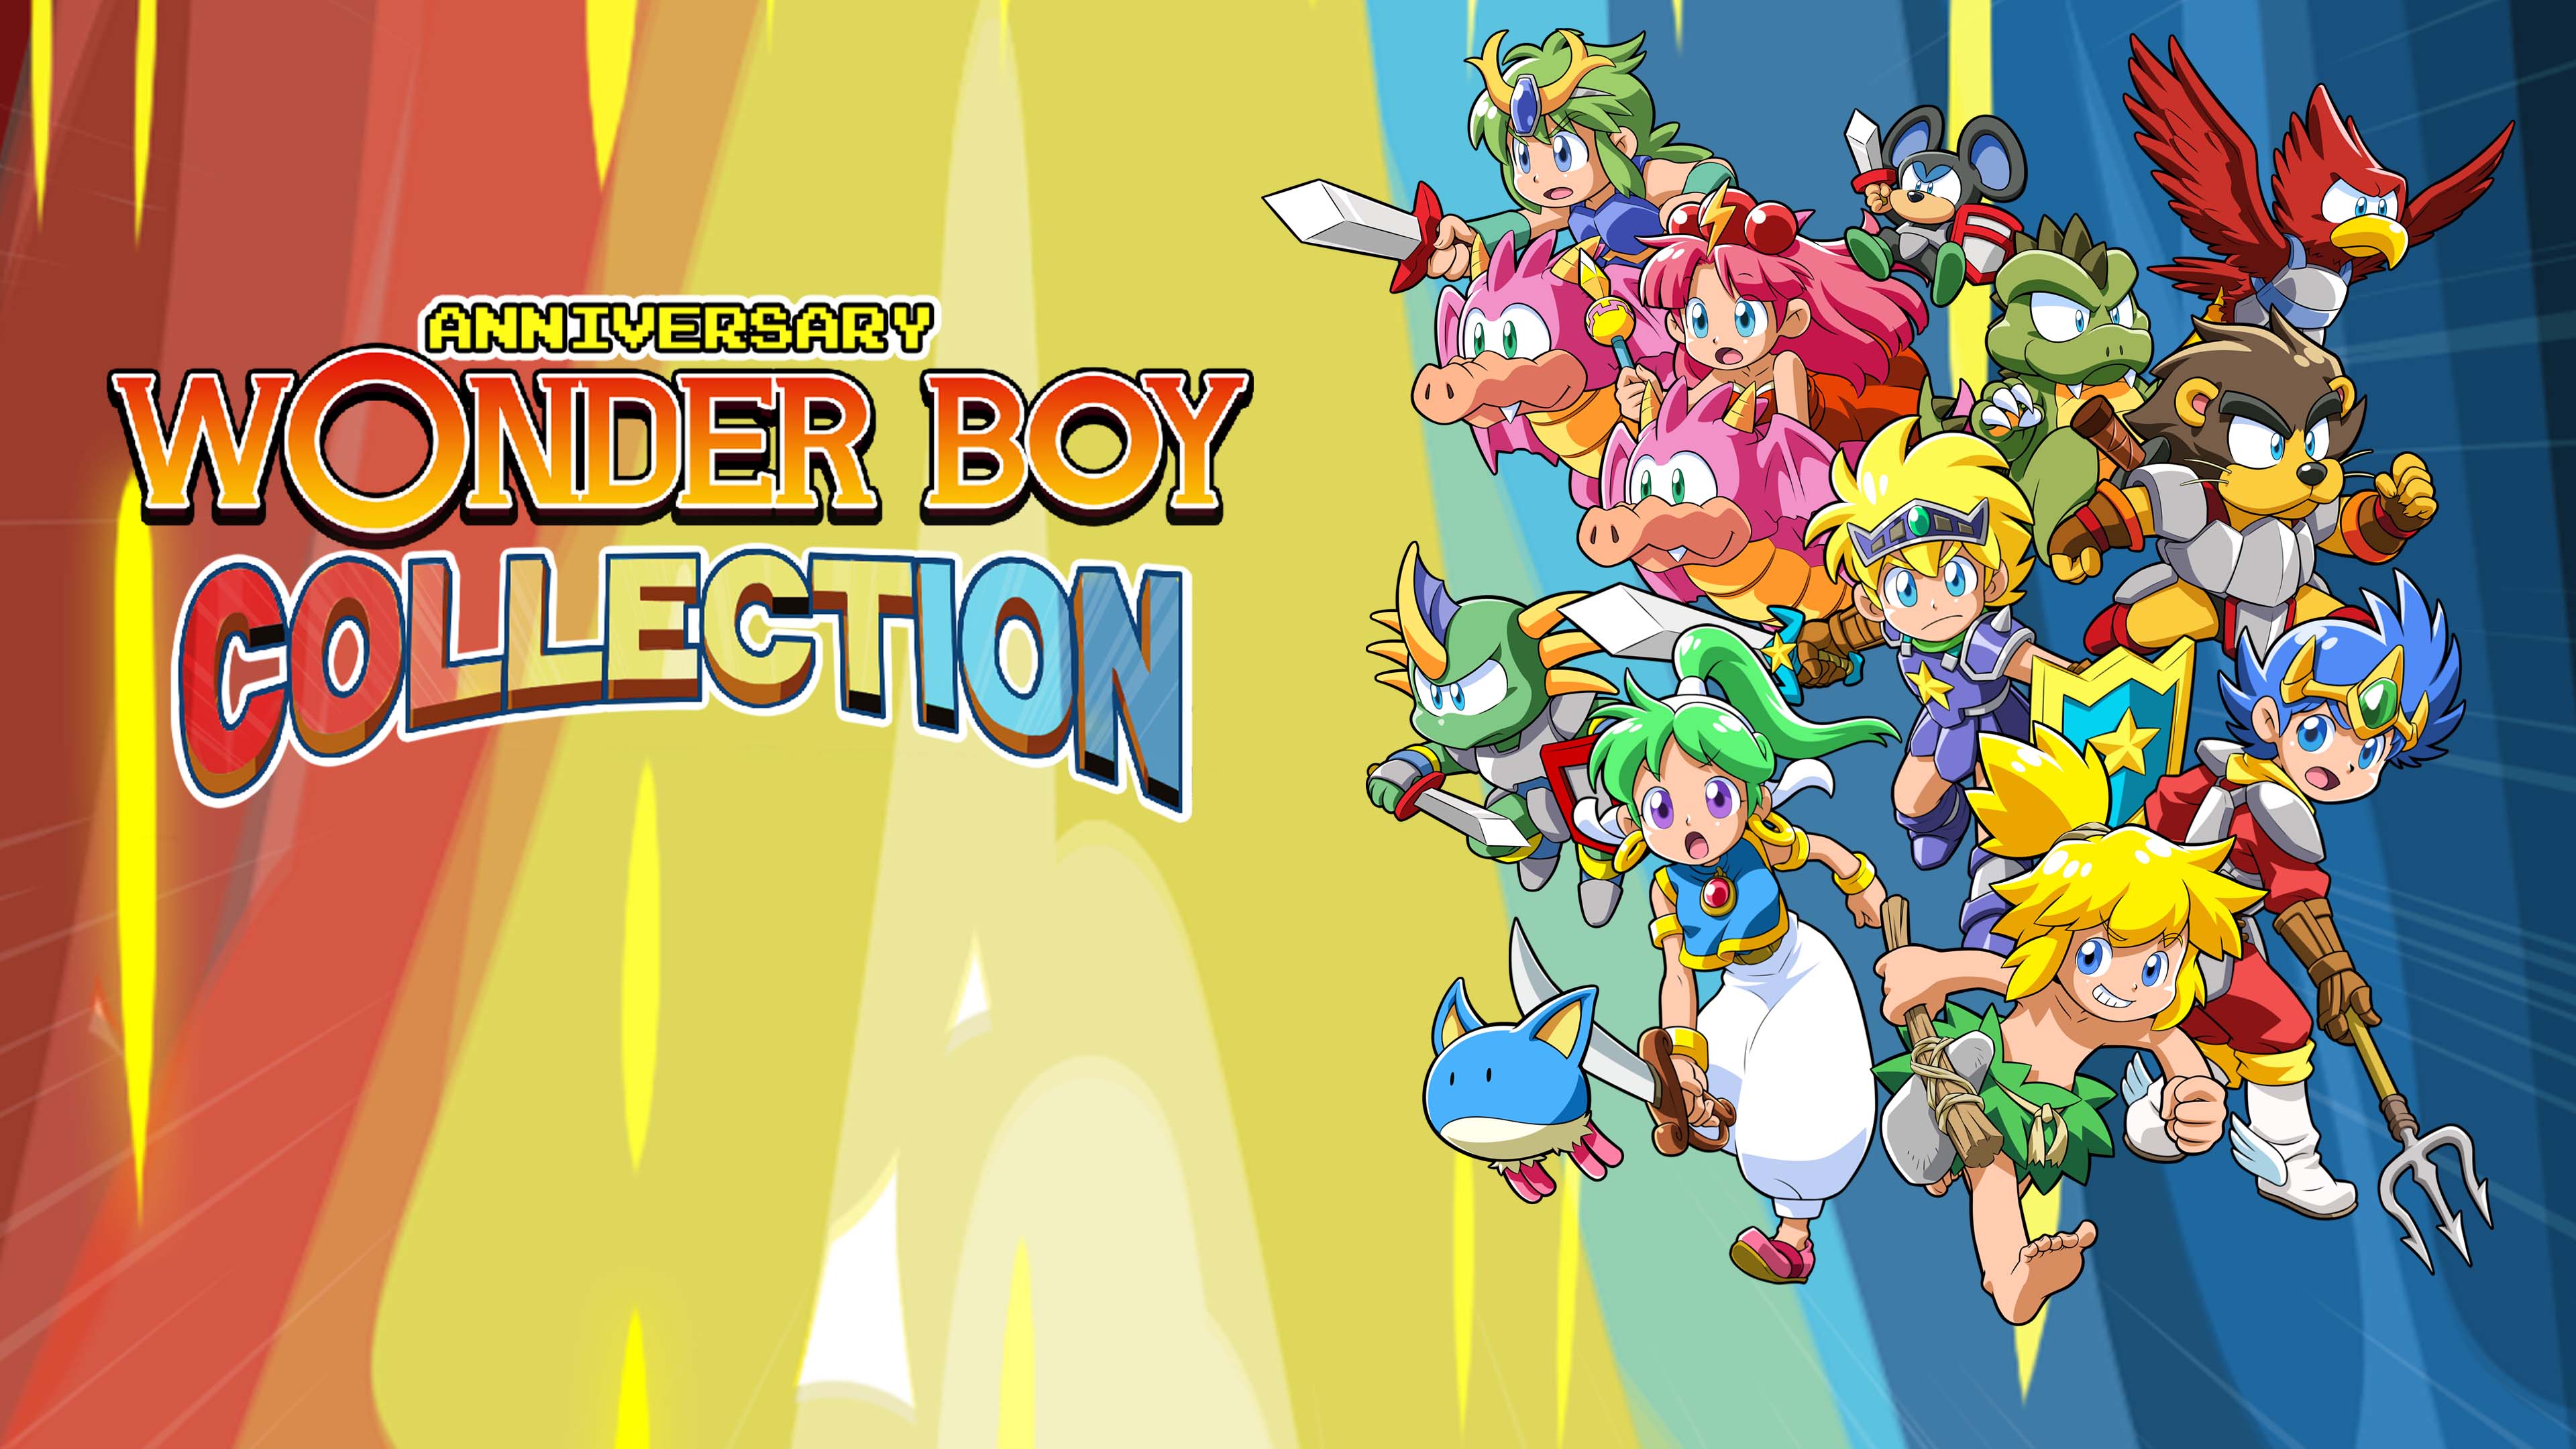 Wonder Boy Anniversary Collection